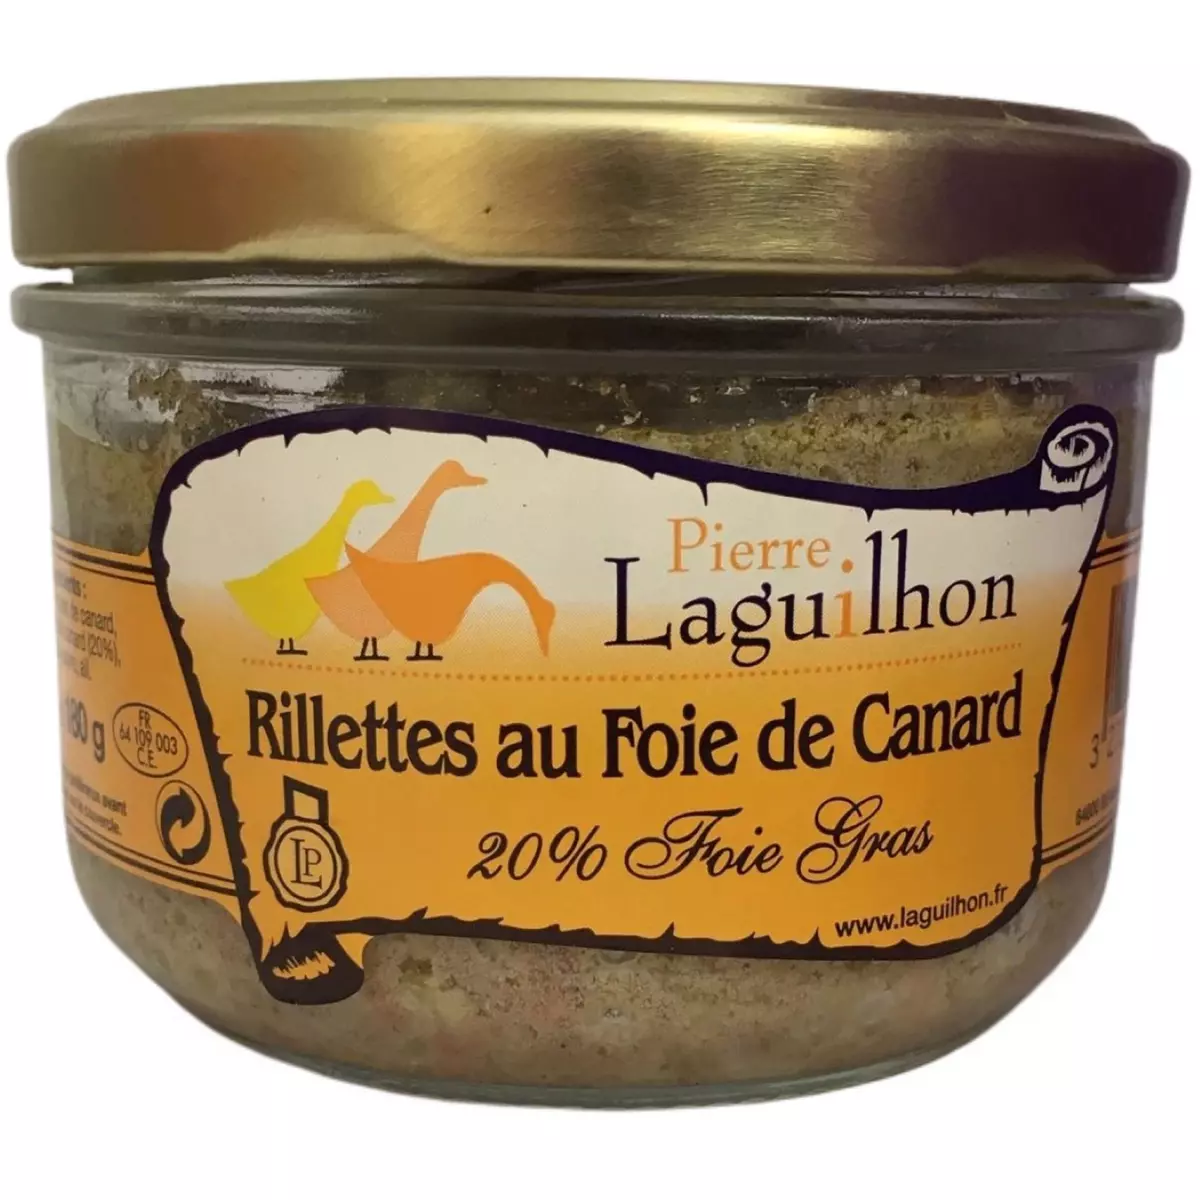 PIERRE LAGUILHON Rillettes au foie de canard 20% foie gras 180g